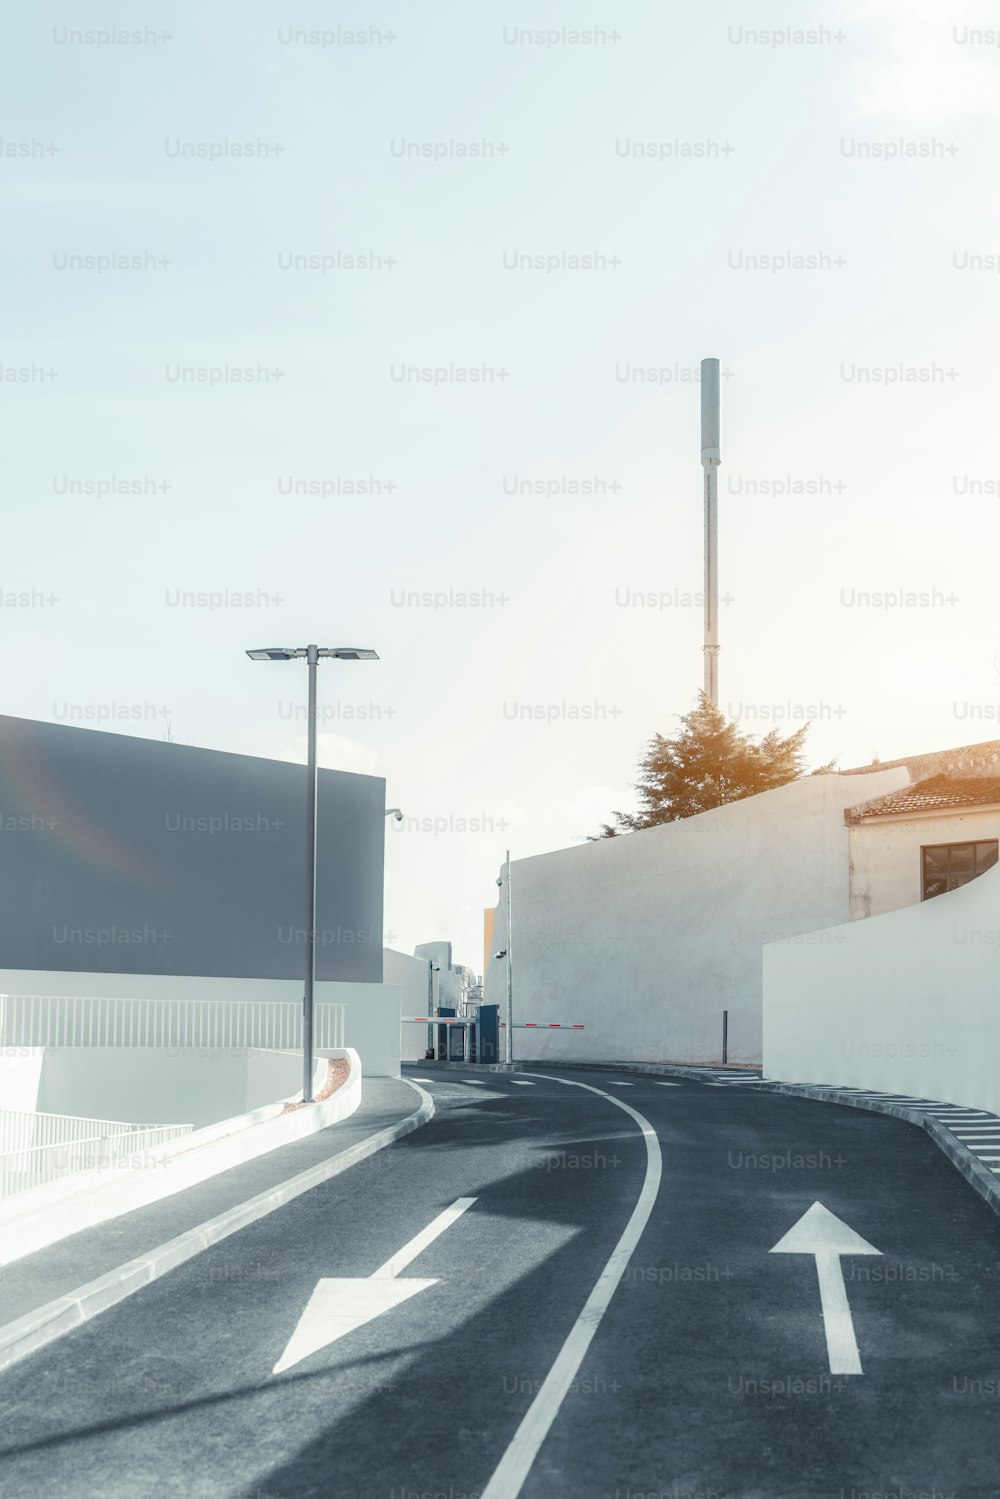 도로 표시와 양쪽의 작은 보도, 뒤에 셀룰러 안테나, 화창한 날로 반대 화살표가있는 끝의 장벽을 따르는 좁은 2 차선 아스팔트 도로의 수직보기